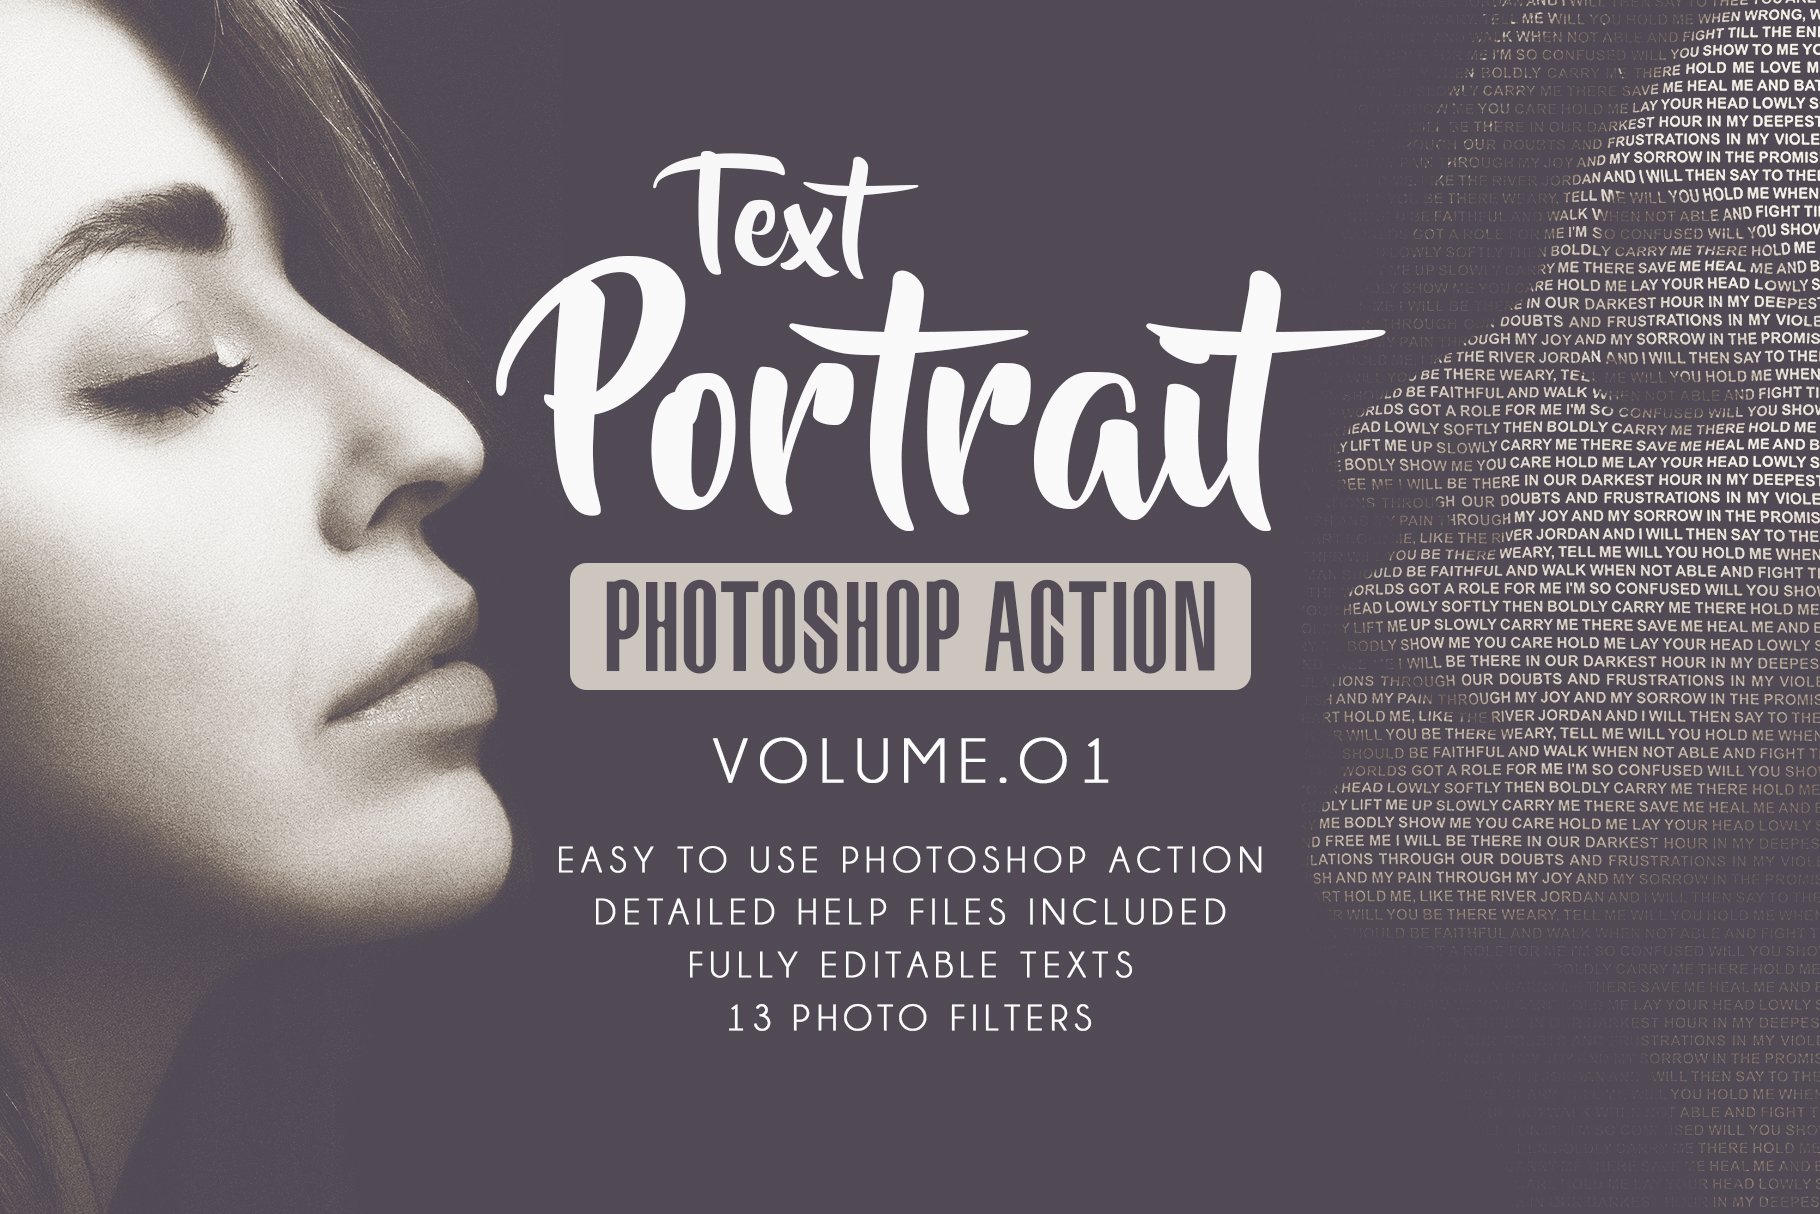 Text Portrait Photoshop Actionscover image.